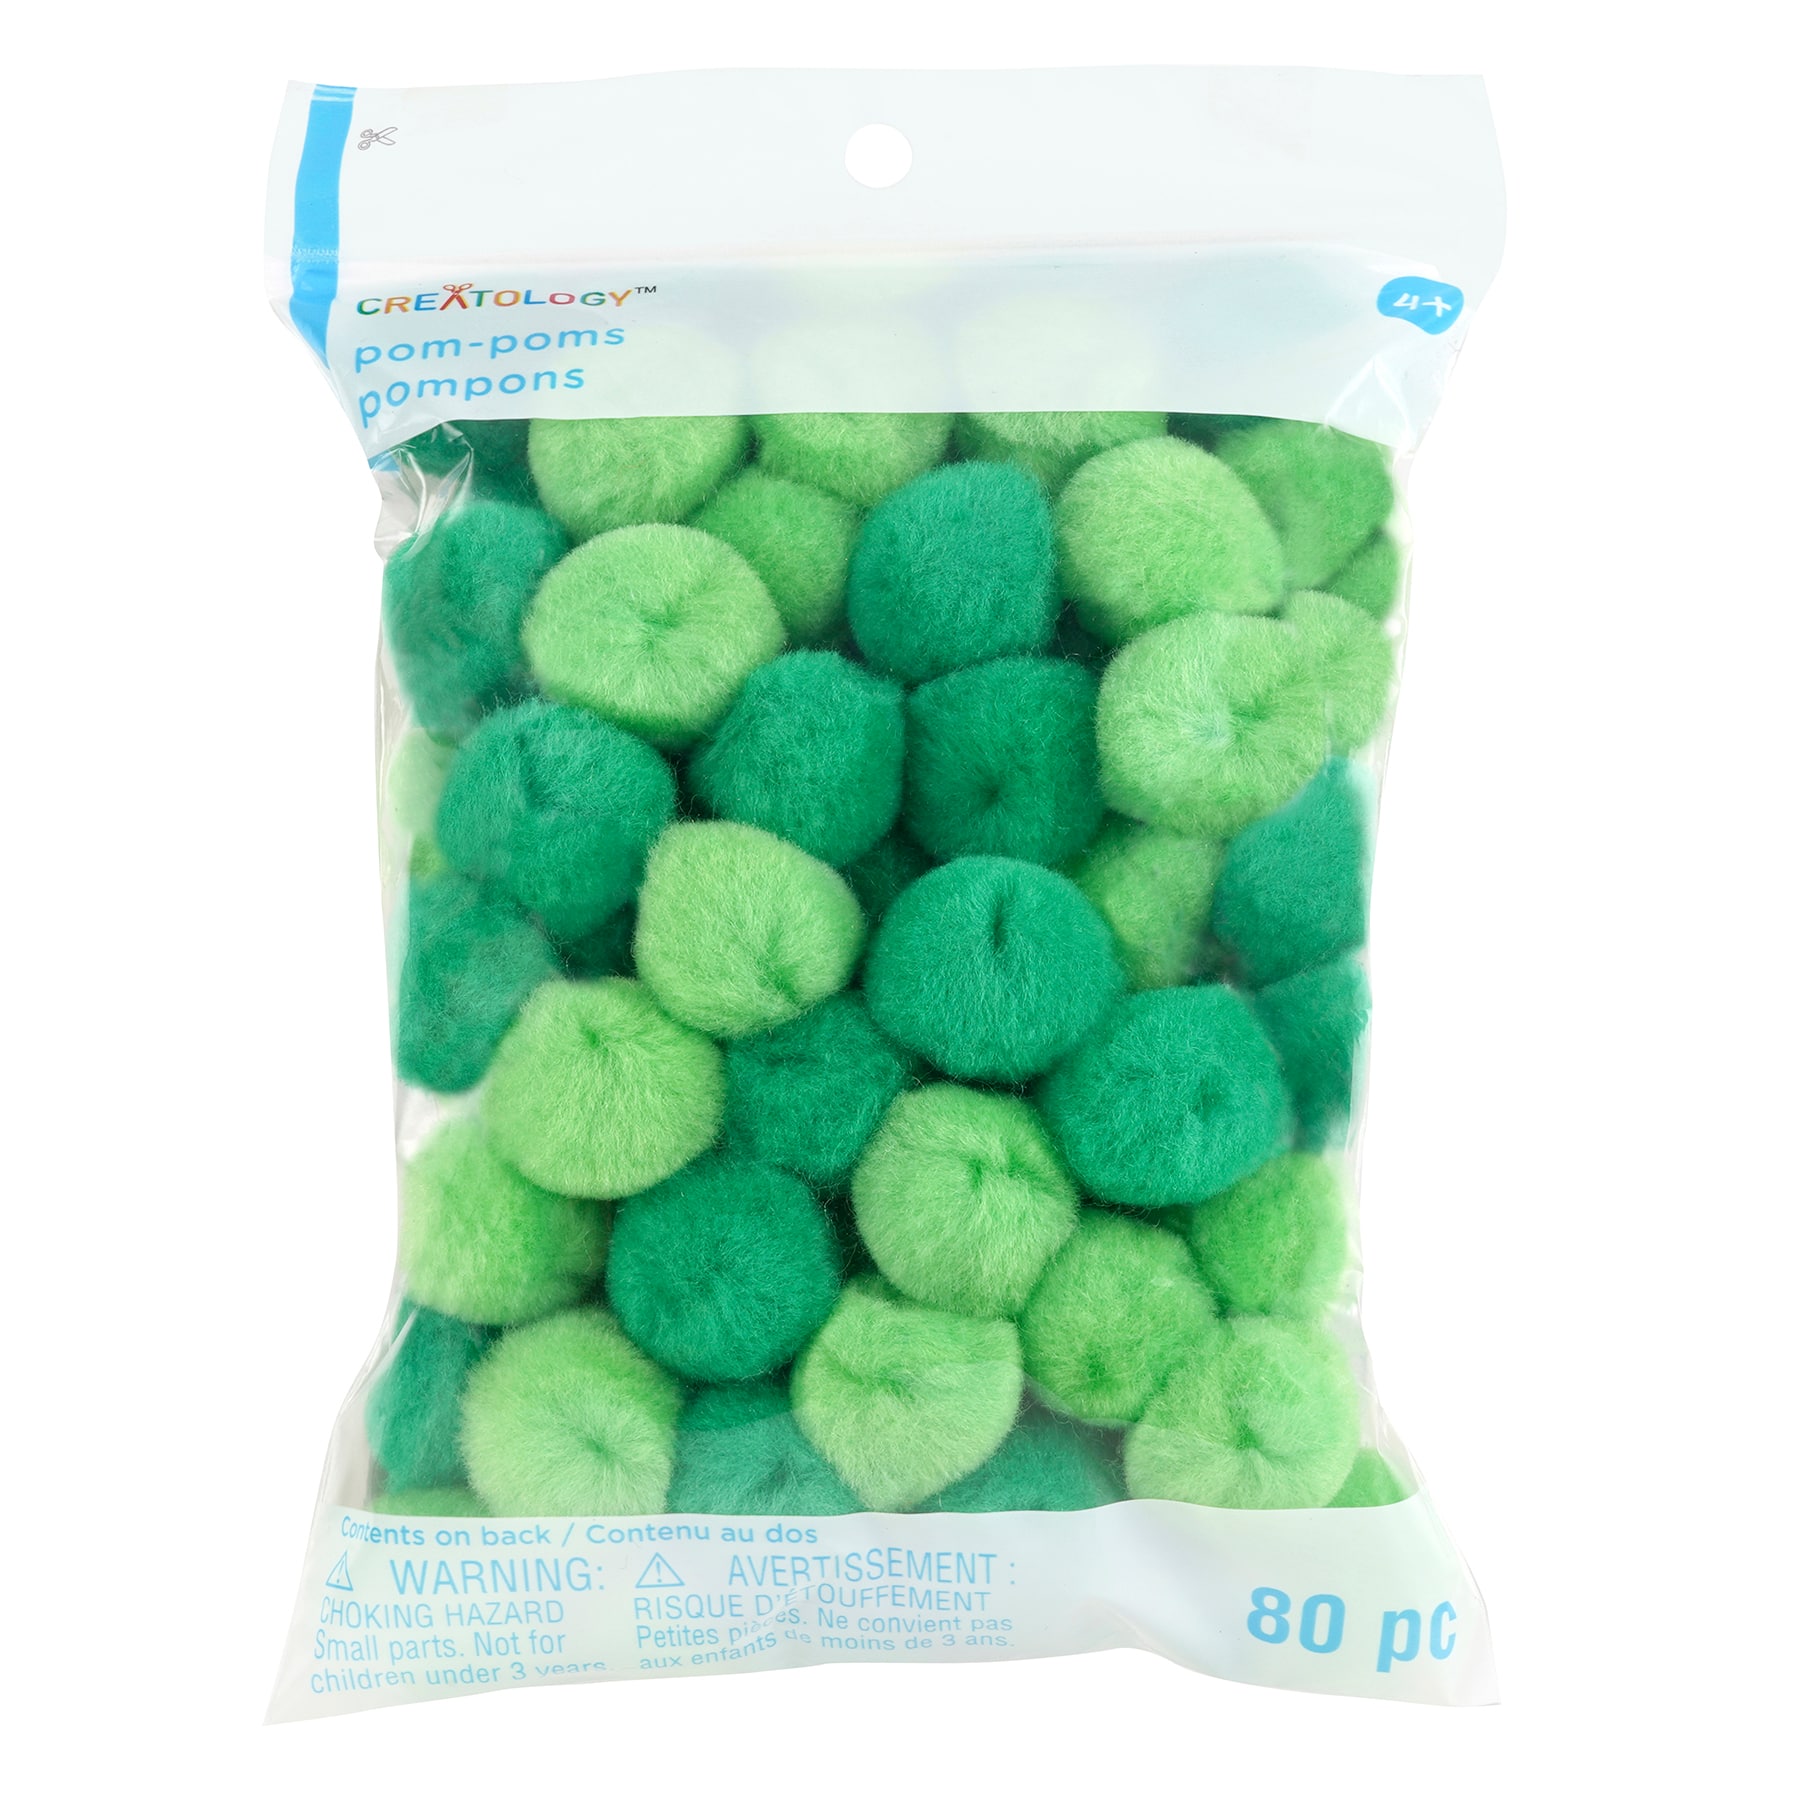 Mini Pom Poms, 2000 Pieces Fluffy Pom Poms Balls, 1cm Fluffy Pompoms Plush  Balls Colourful Mini Pompoms Craft Pom Mini Pompoms for Crafts DIY Creative  Craft Making Pom Pom Set 